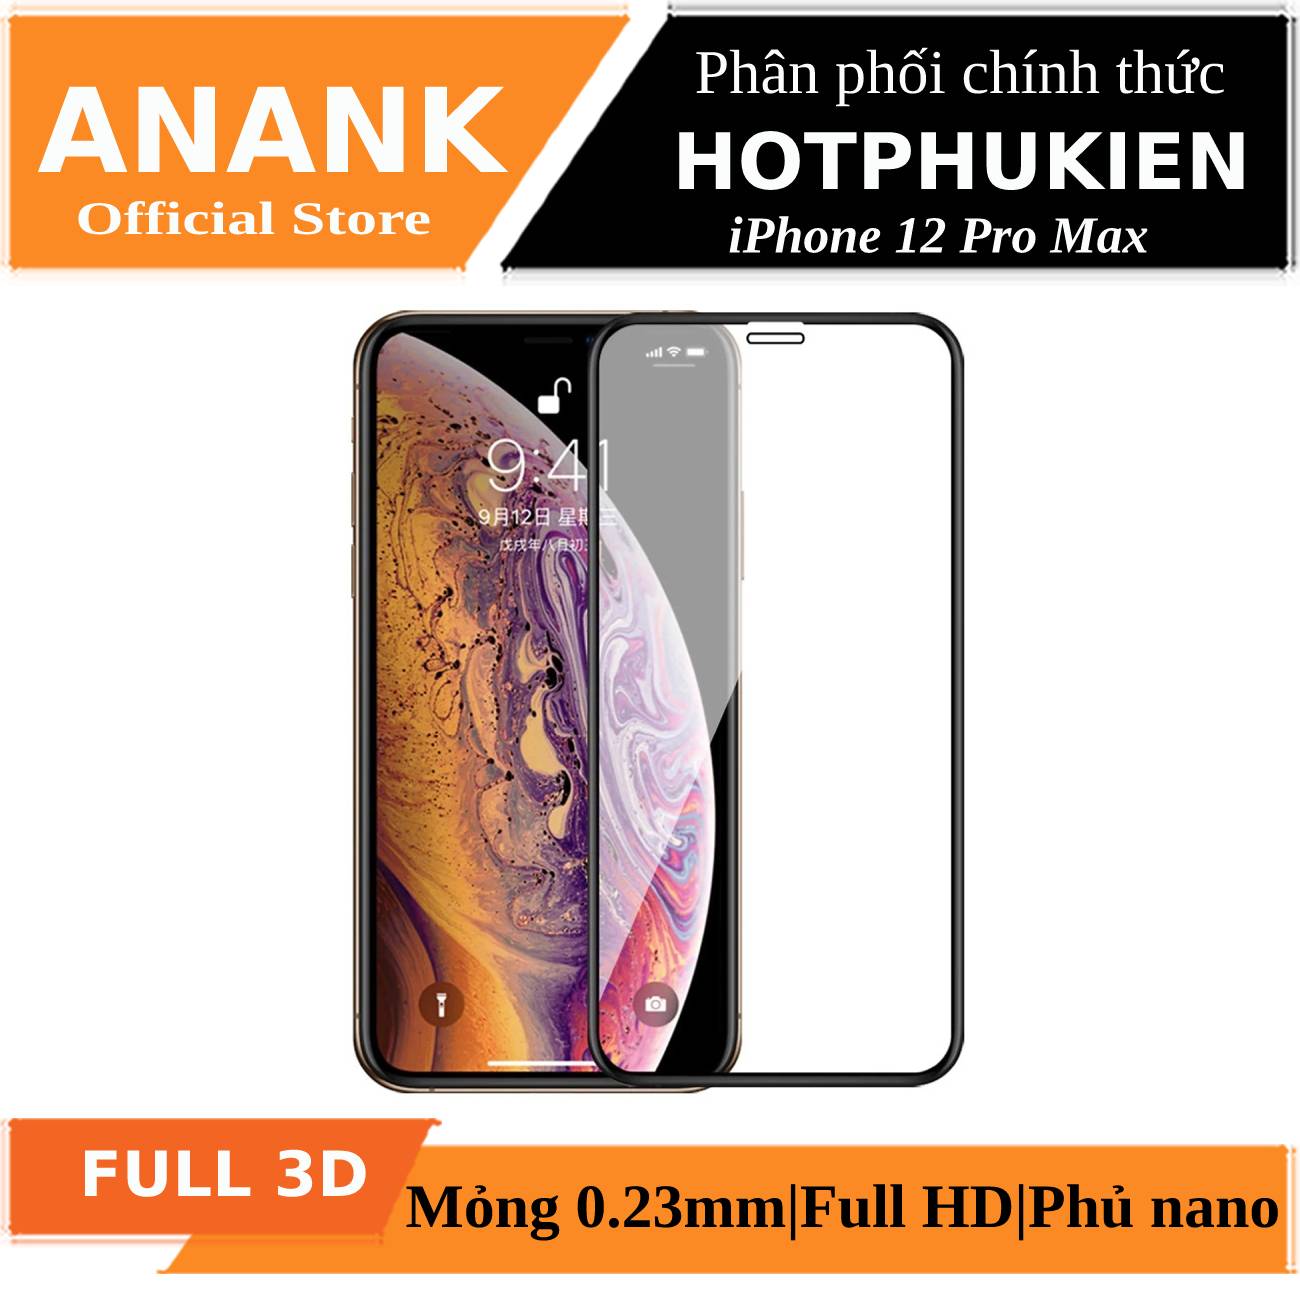 Miếng dán kính cường lực Full 3D cho iPhone 12 Pro Max chính hãng Anank Nhật Bản